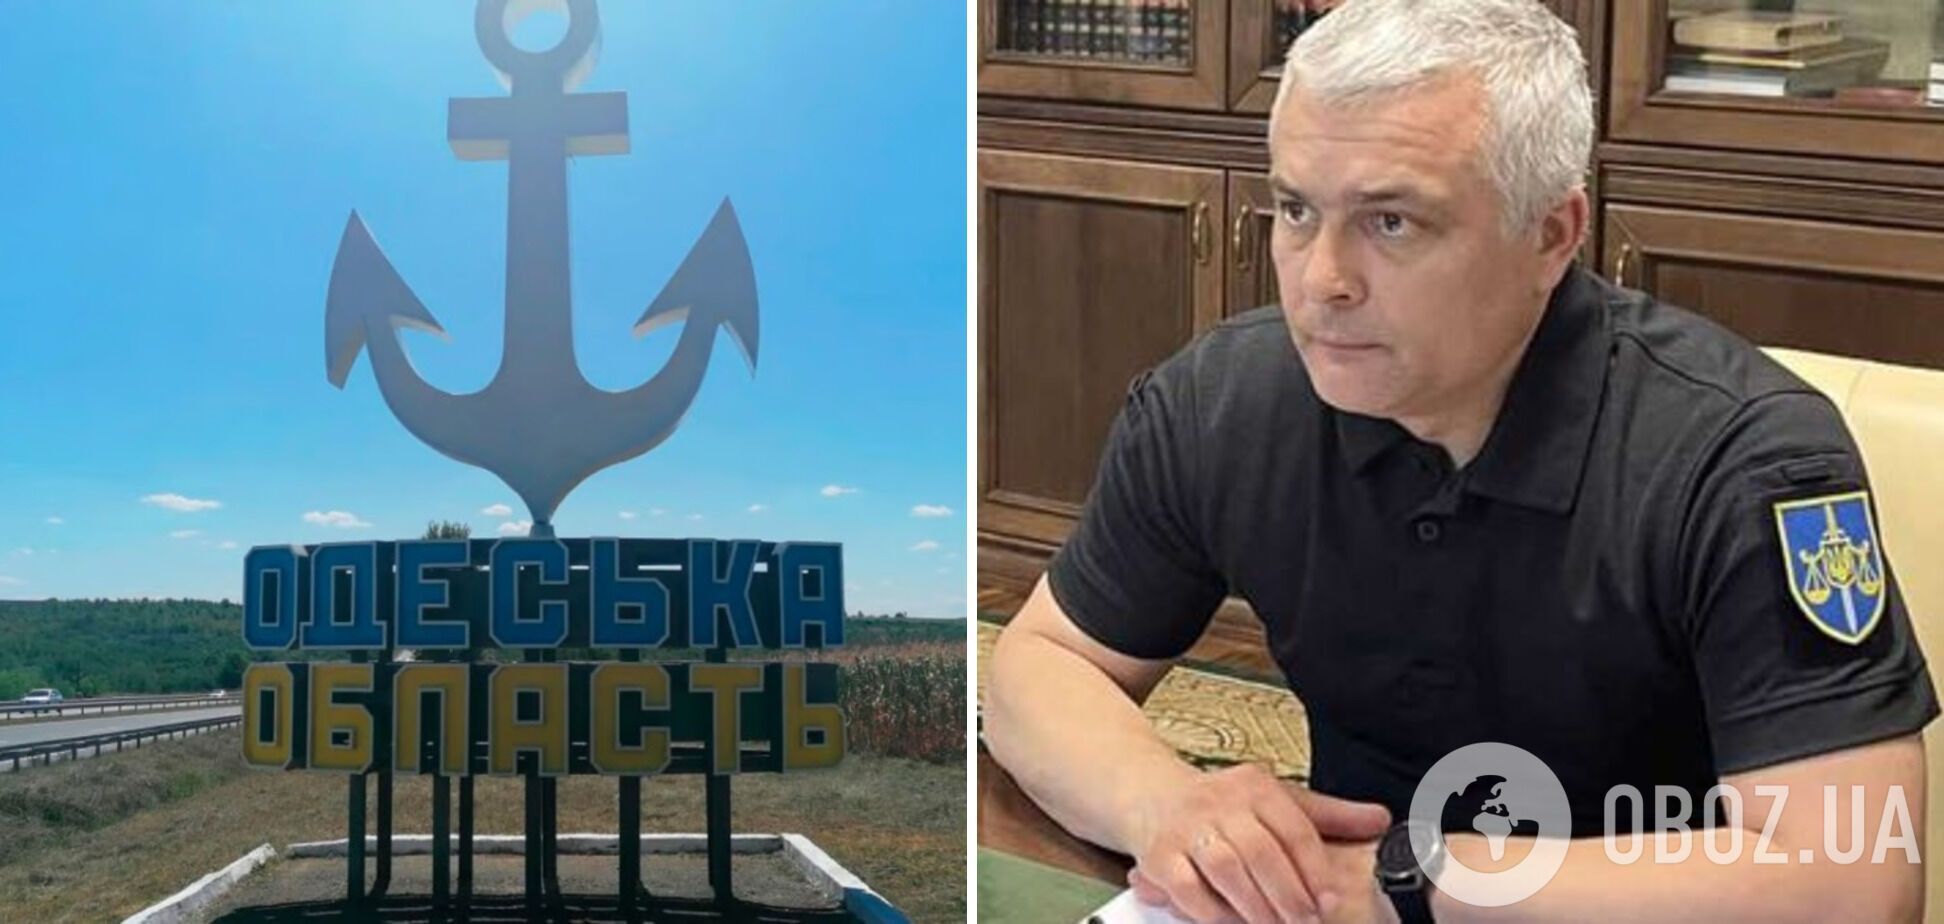 Одесскую область возглавил руководитель столичной прокуратуры Олег Кипер: что о нем известно